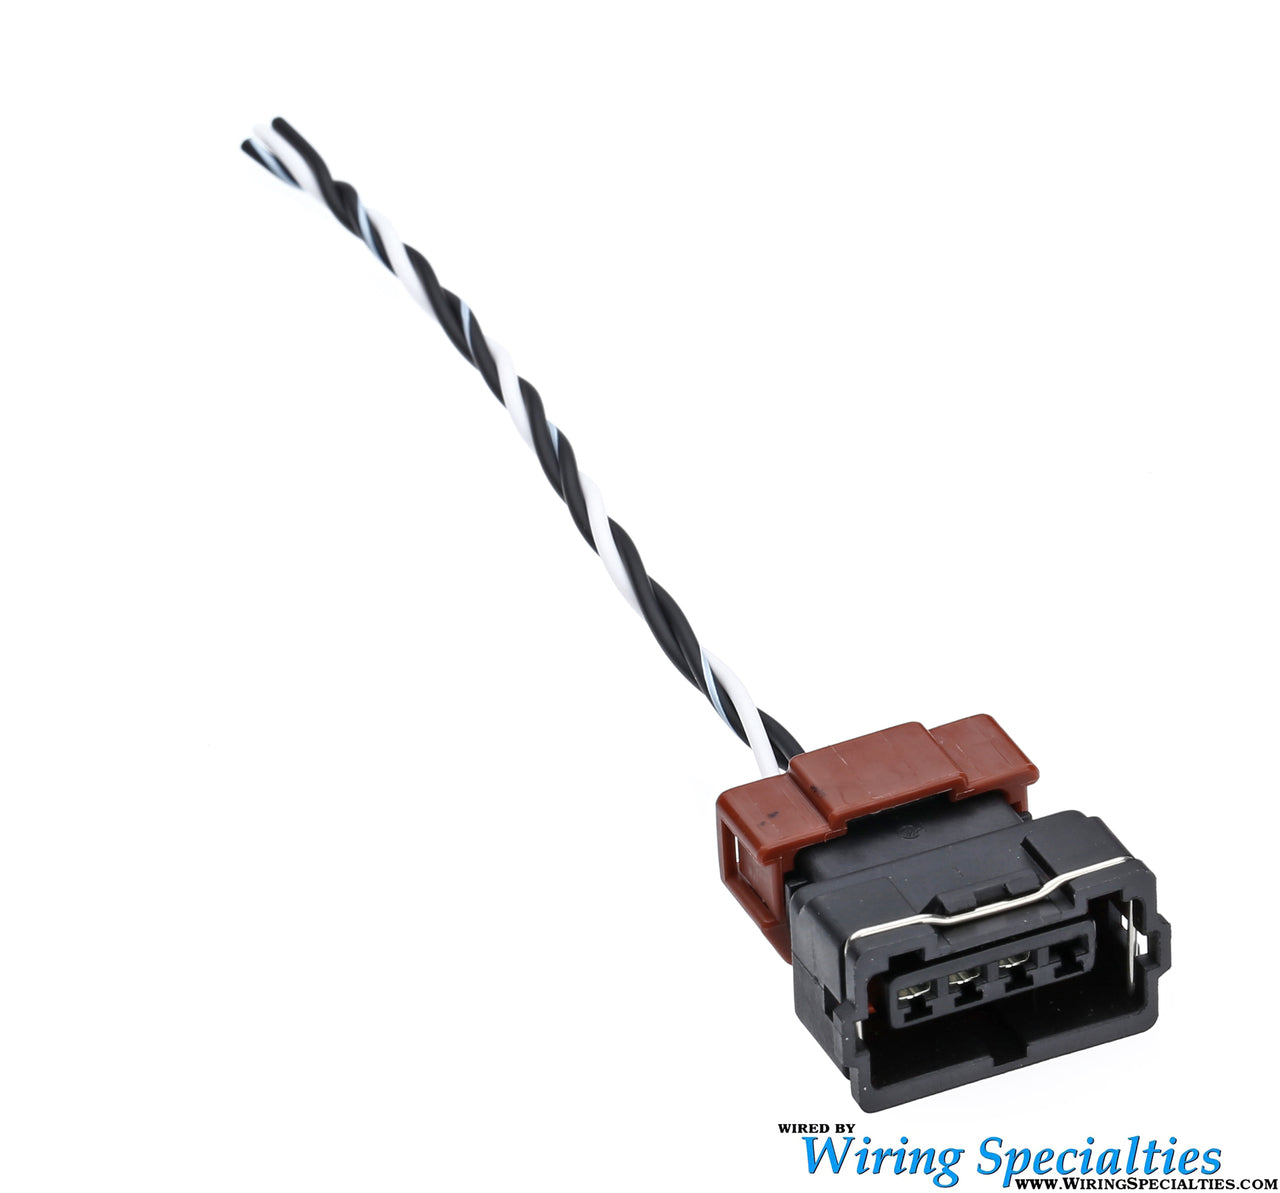 Wiring Specialties S13 SR20 MAFS (Mass Air Flow Sensor) Connector